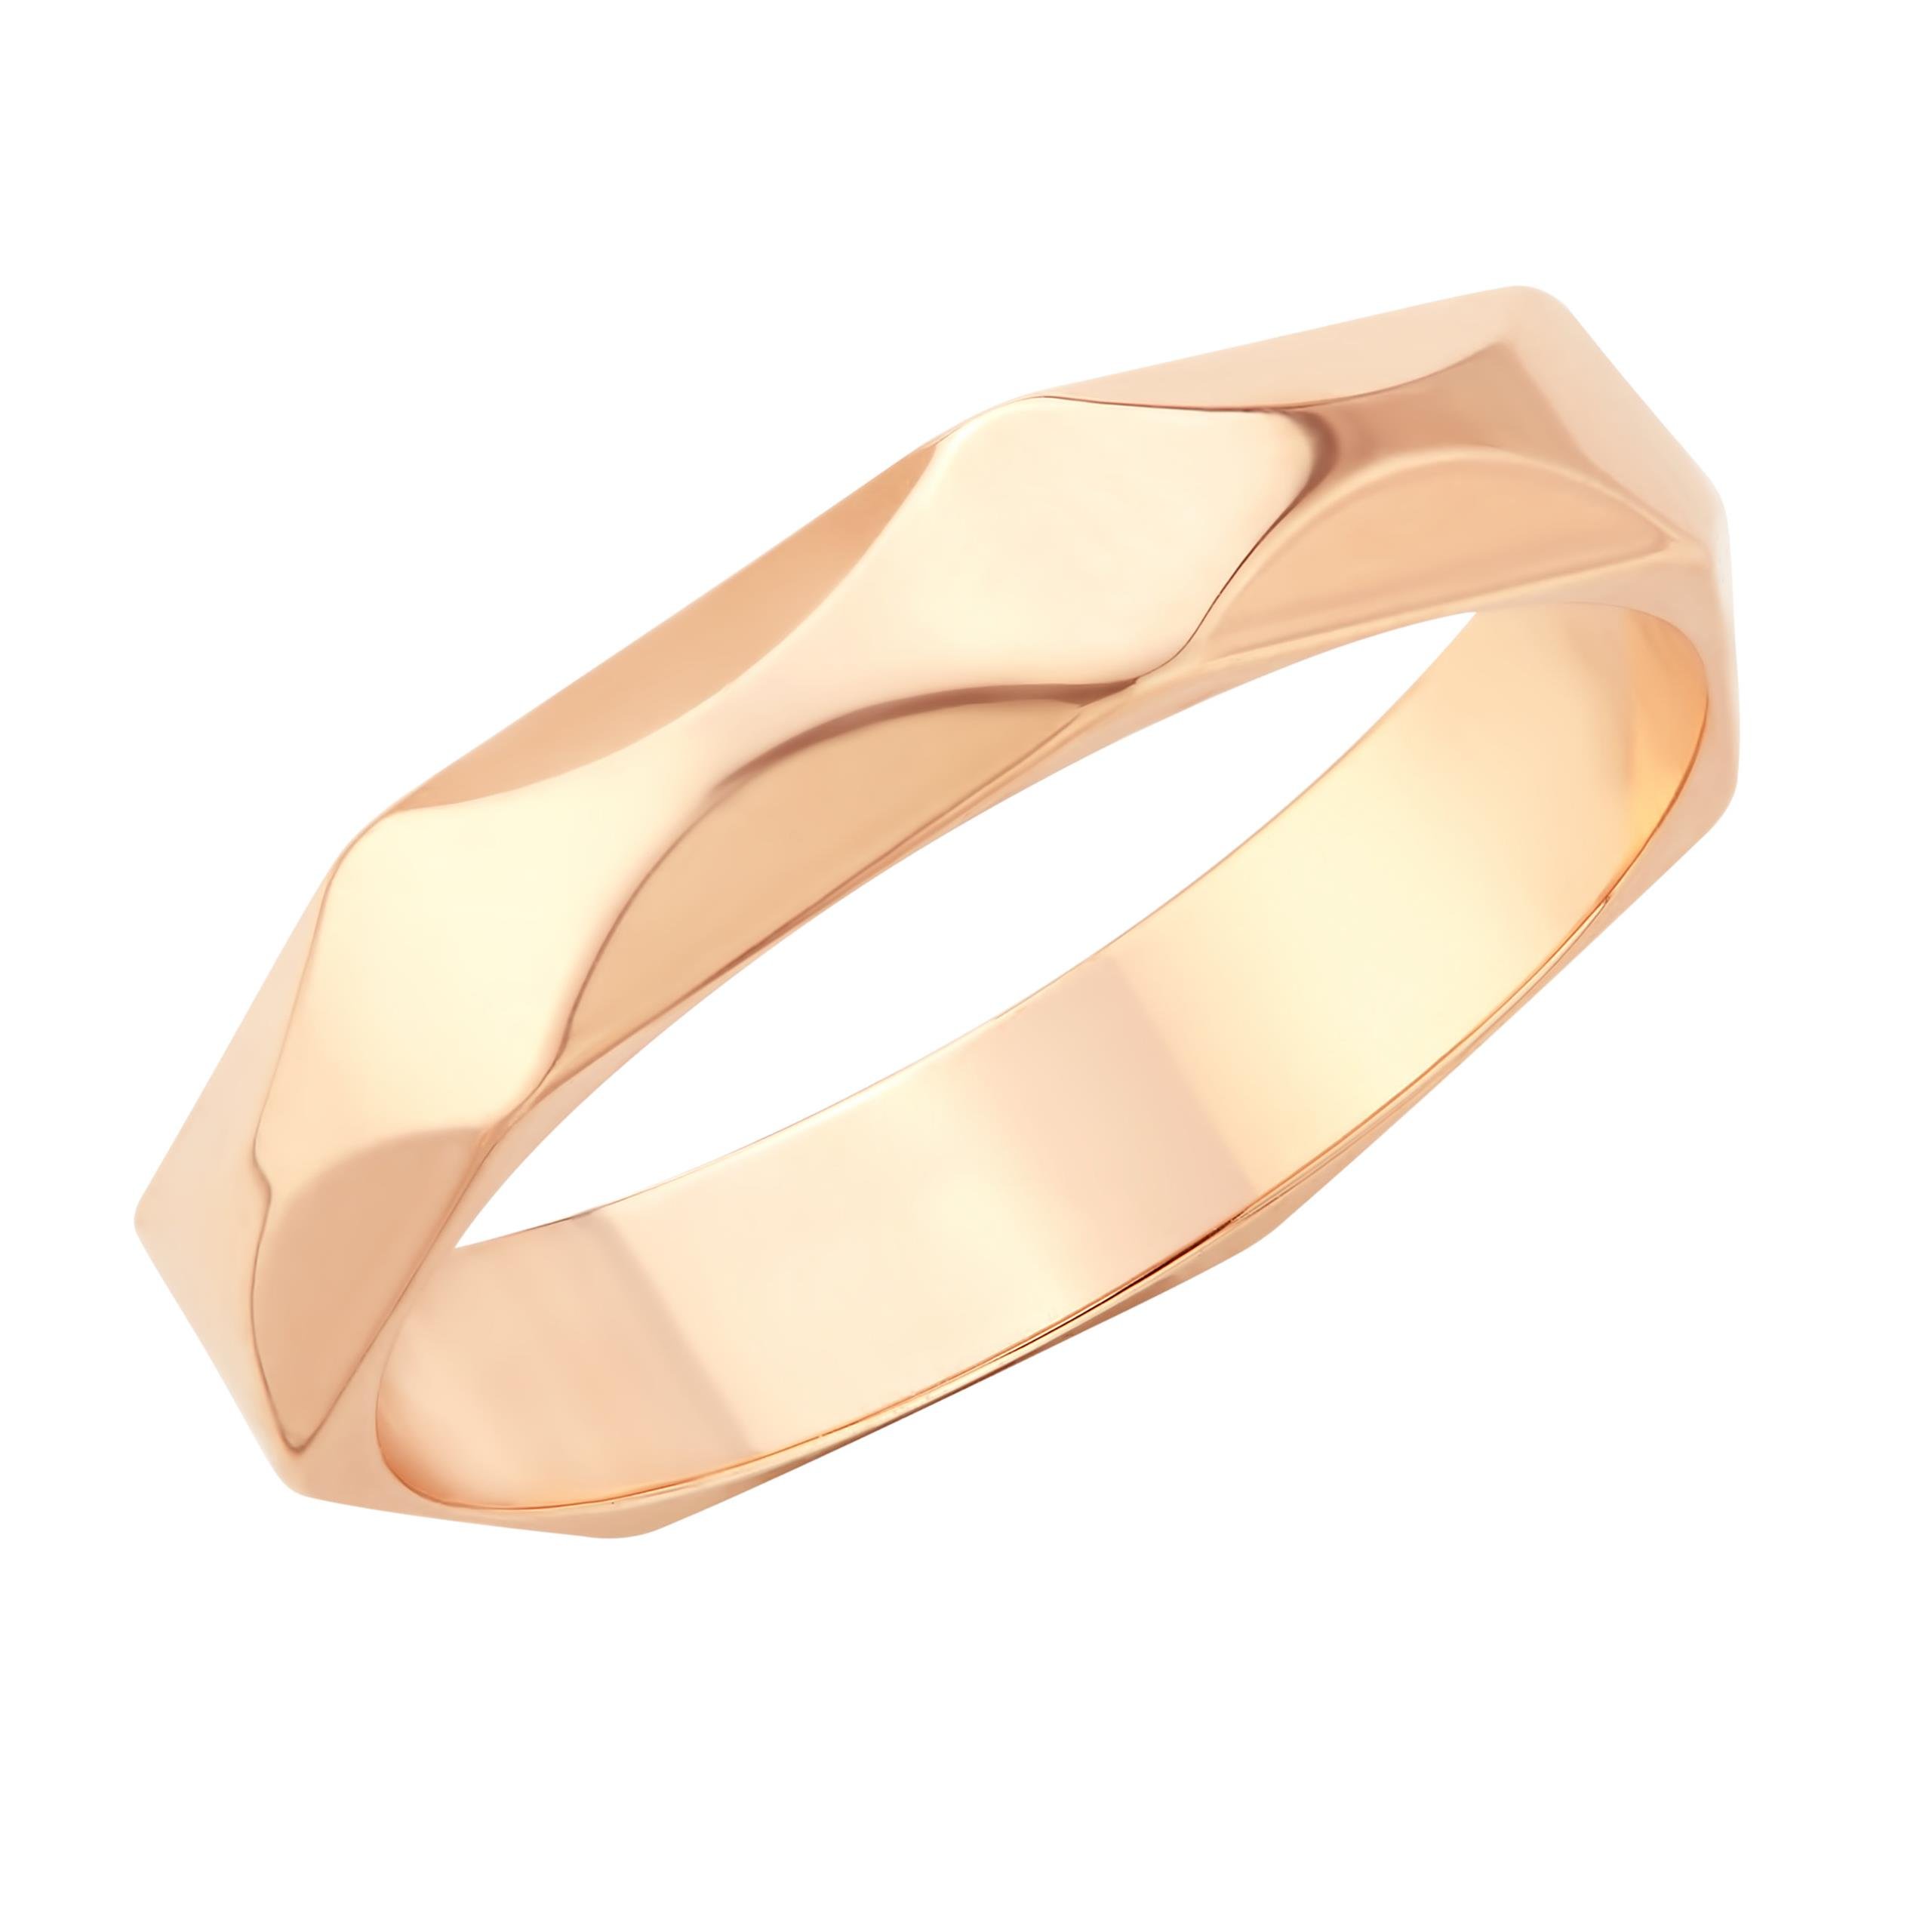 Золотое кольцо с гранями. Кольцо обручальное с гранью 17005. Обручальное кольцо Соколов с алмазной гранью. Обручальное кольцо из белого золота с алмазной гранью. Кольца с алмазной гранью золотые обручальные.